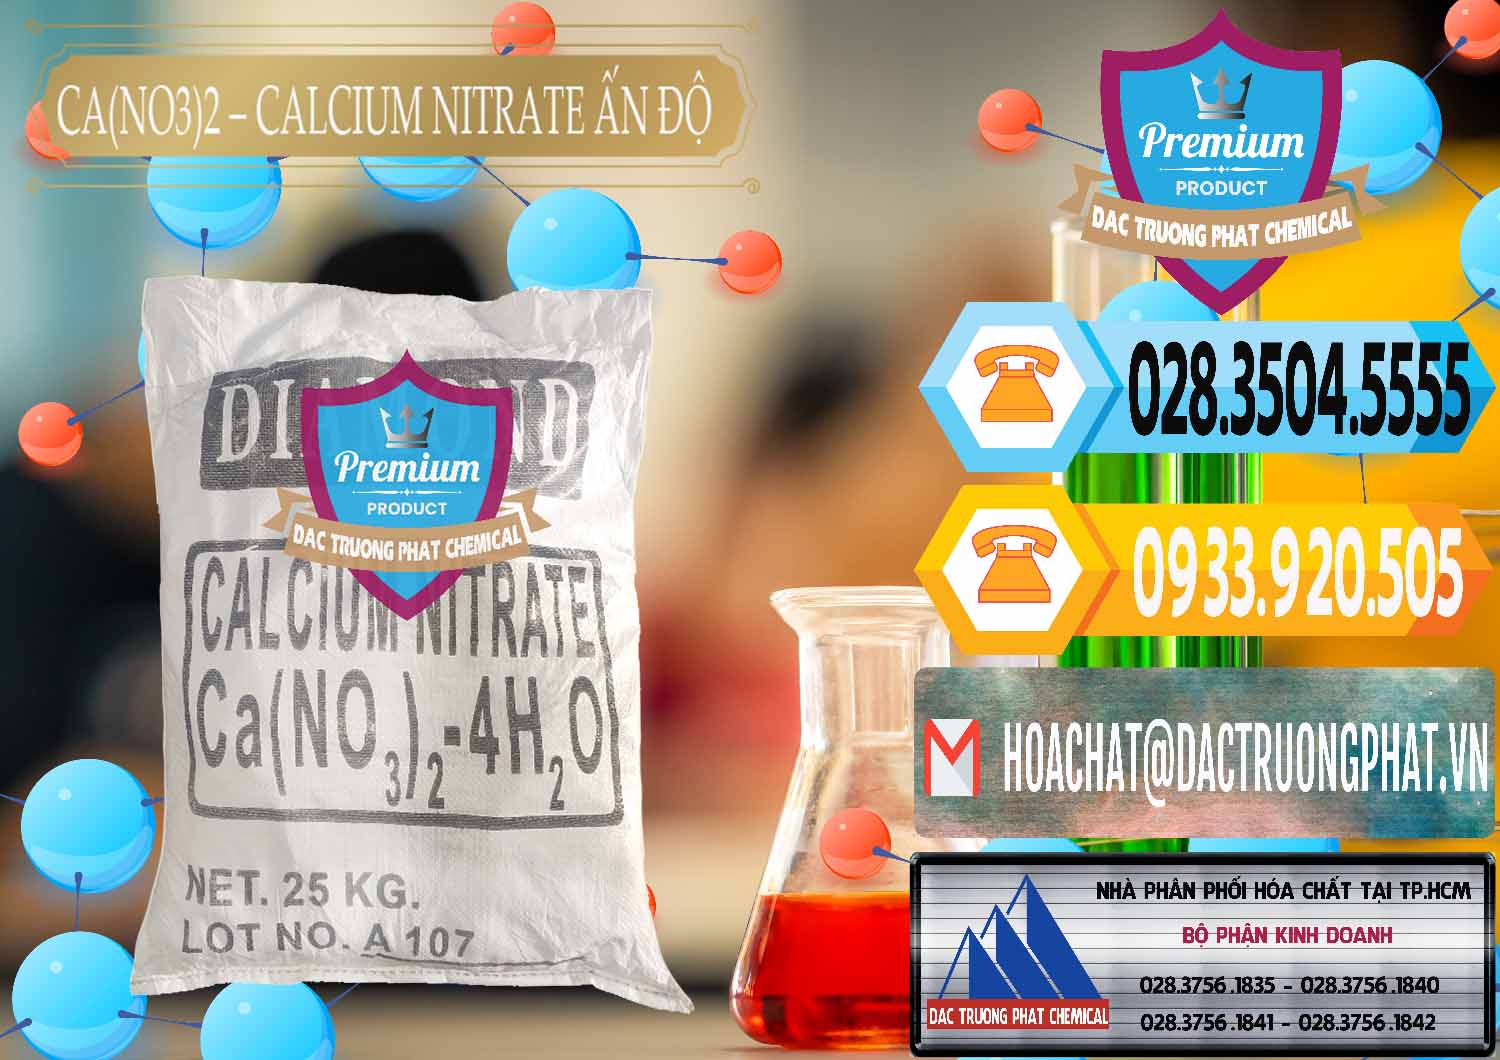 Nơi chuyên phân phối _ bán CA(NO3)2 – Calcium Nitrate Ấn Độ India - 0038 - Nhà cung cấp _ bán hóa chất tại TP.HCM - hoachattayrua.net